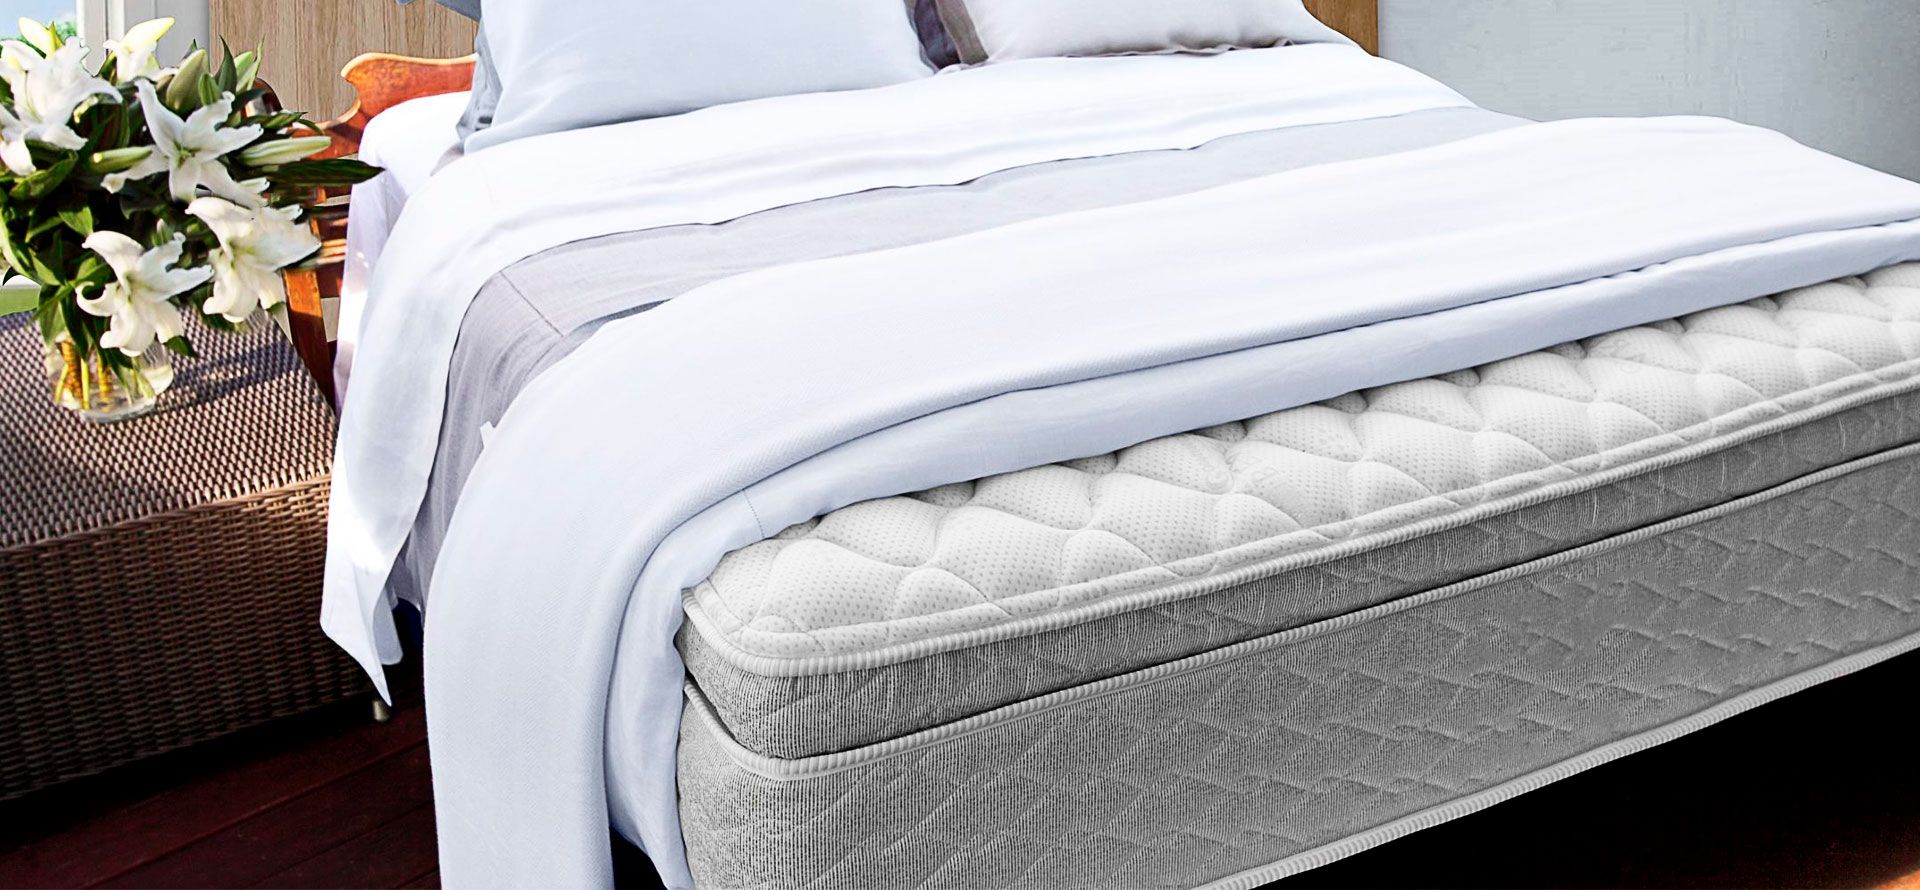 Pillow-Top mattress in room.